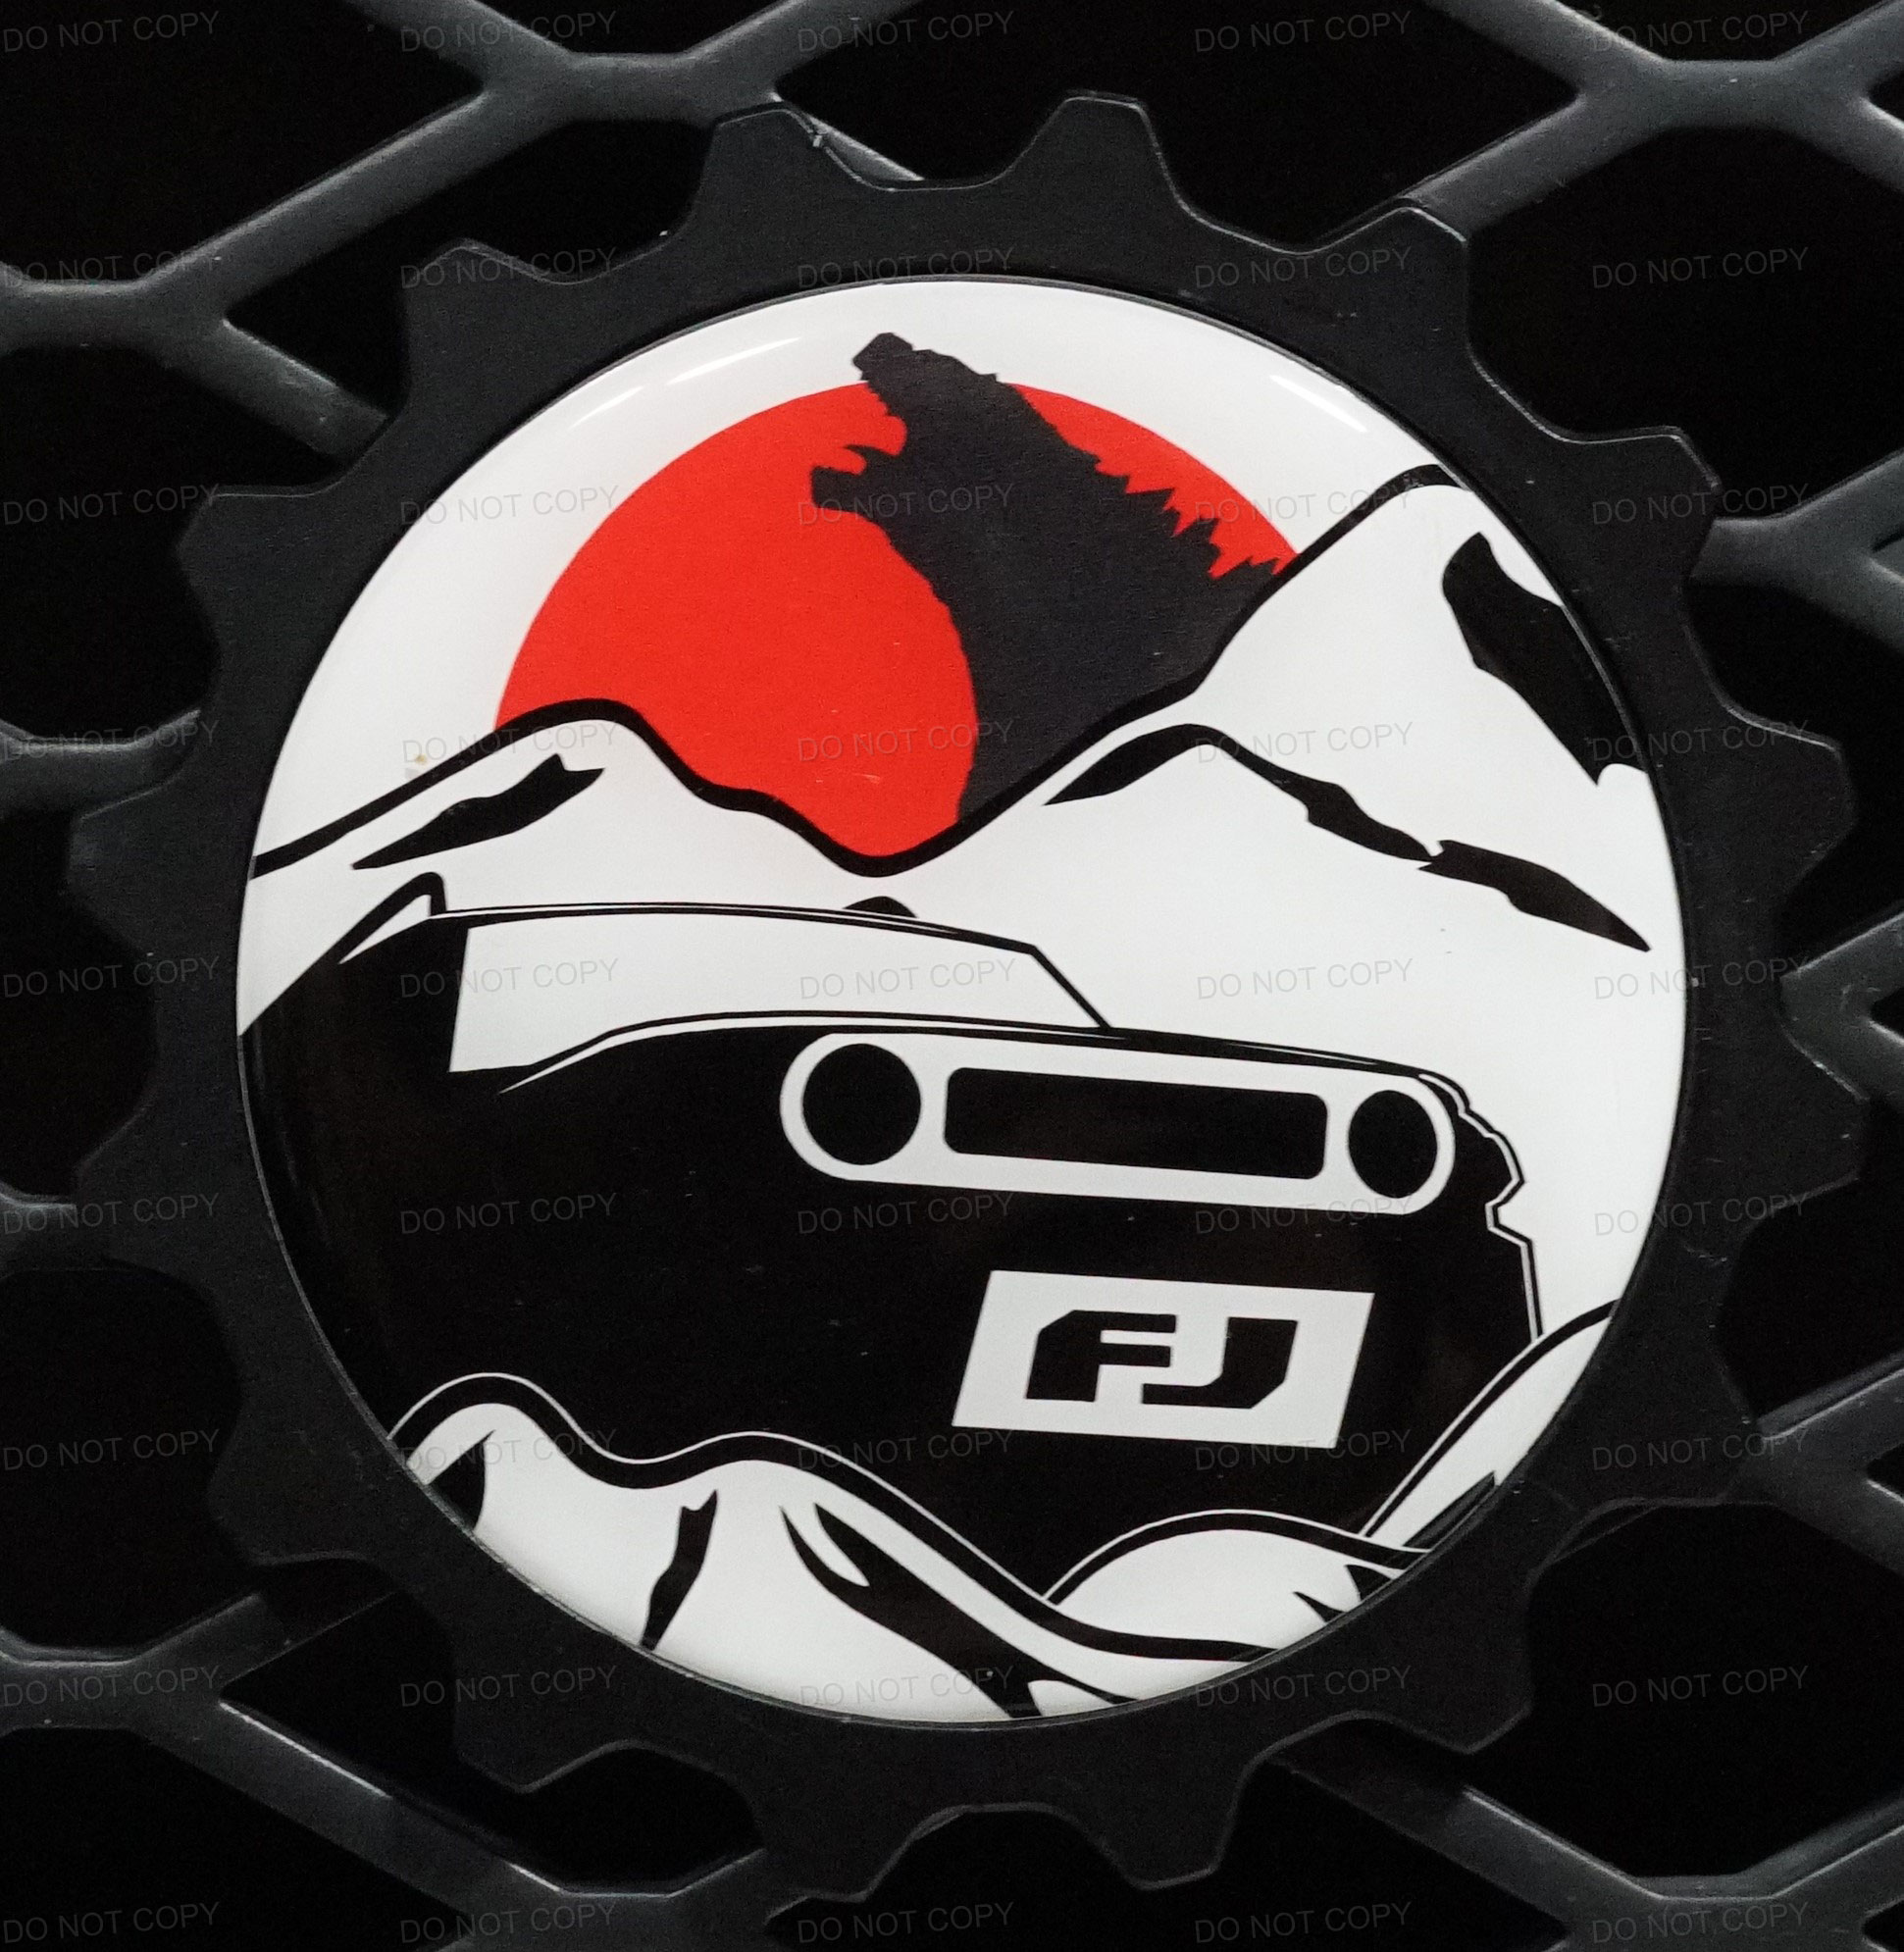 FJ Godzilla Badge